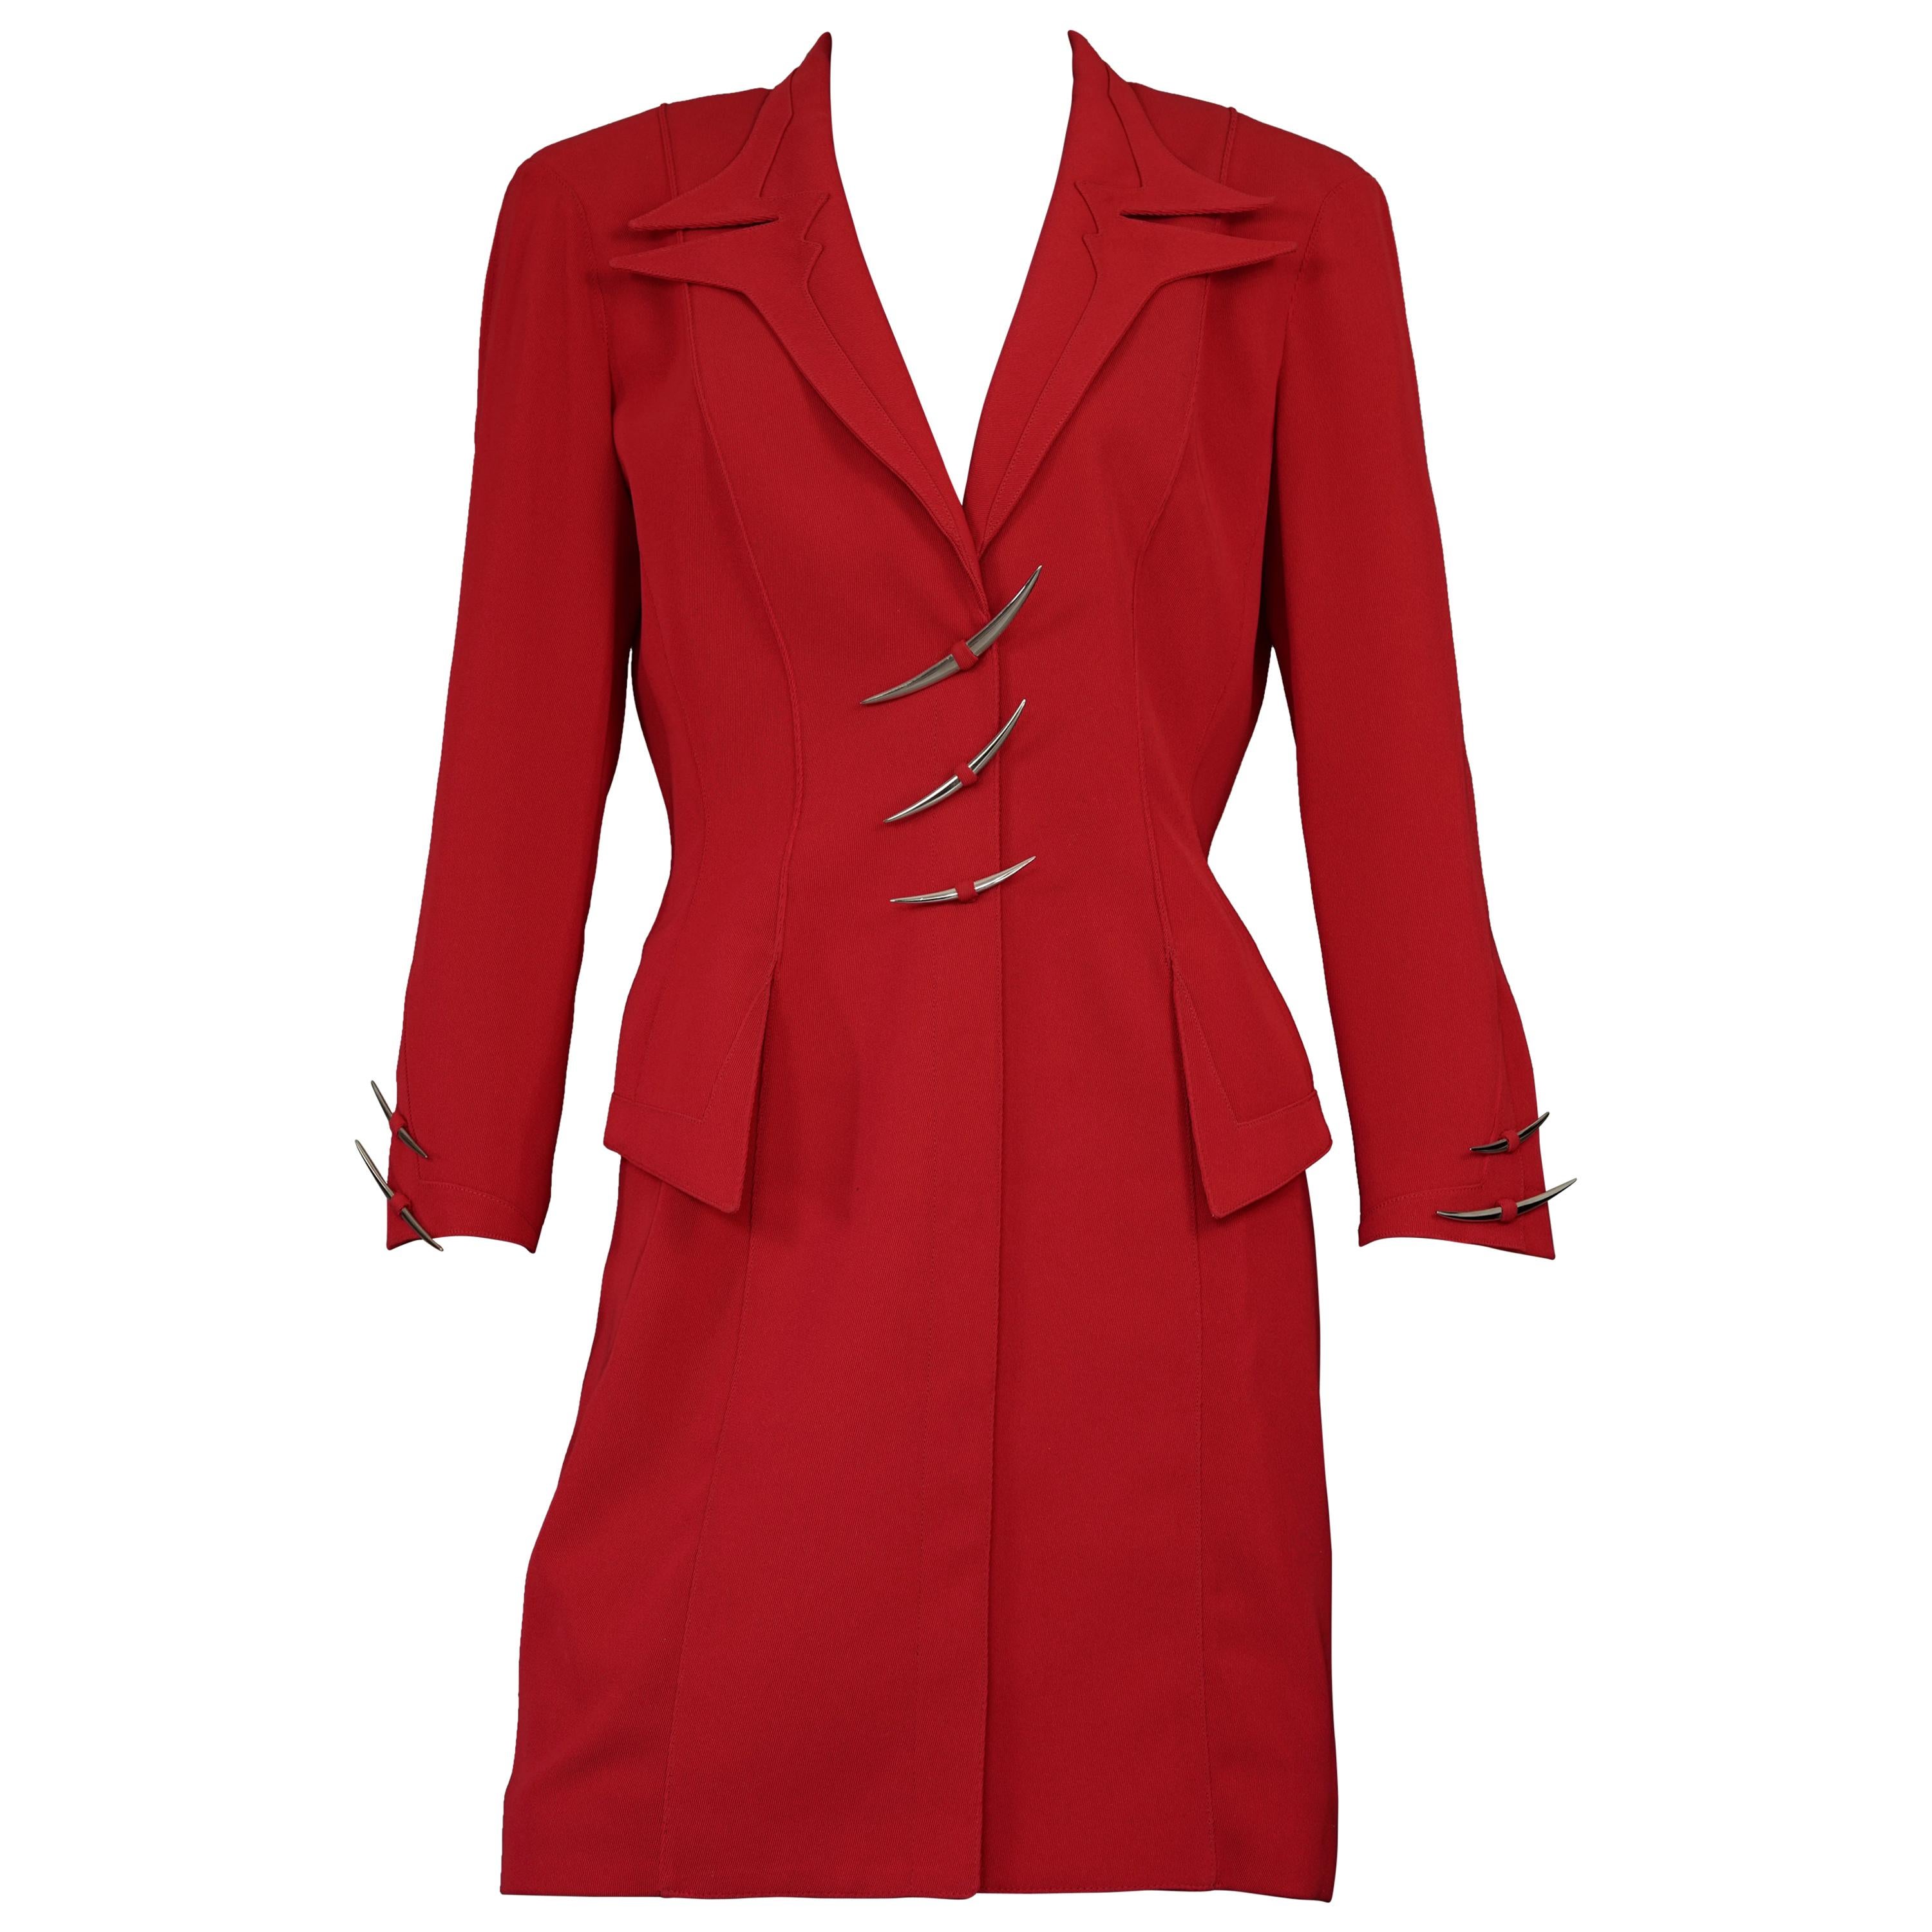 Vintage Iconic THIERRY MUGLER Silver Metal Hooks Futuristic Red Dress Suit

Mesures prises à plat, veuillez doubler le buste, la taille et les hanches :
Epaule : 15.74 pouces (40 cm)
Manches : 21 pouces (53,5 cm)
Poitrine : 48 cm (18.89